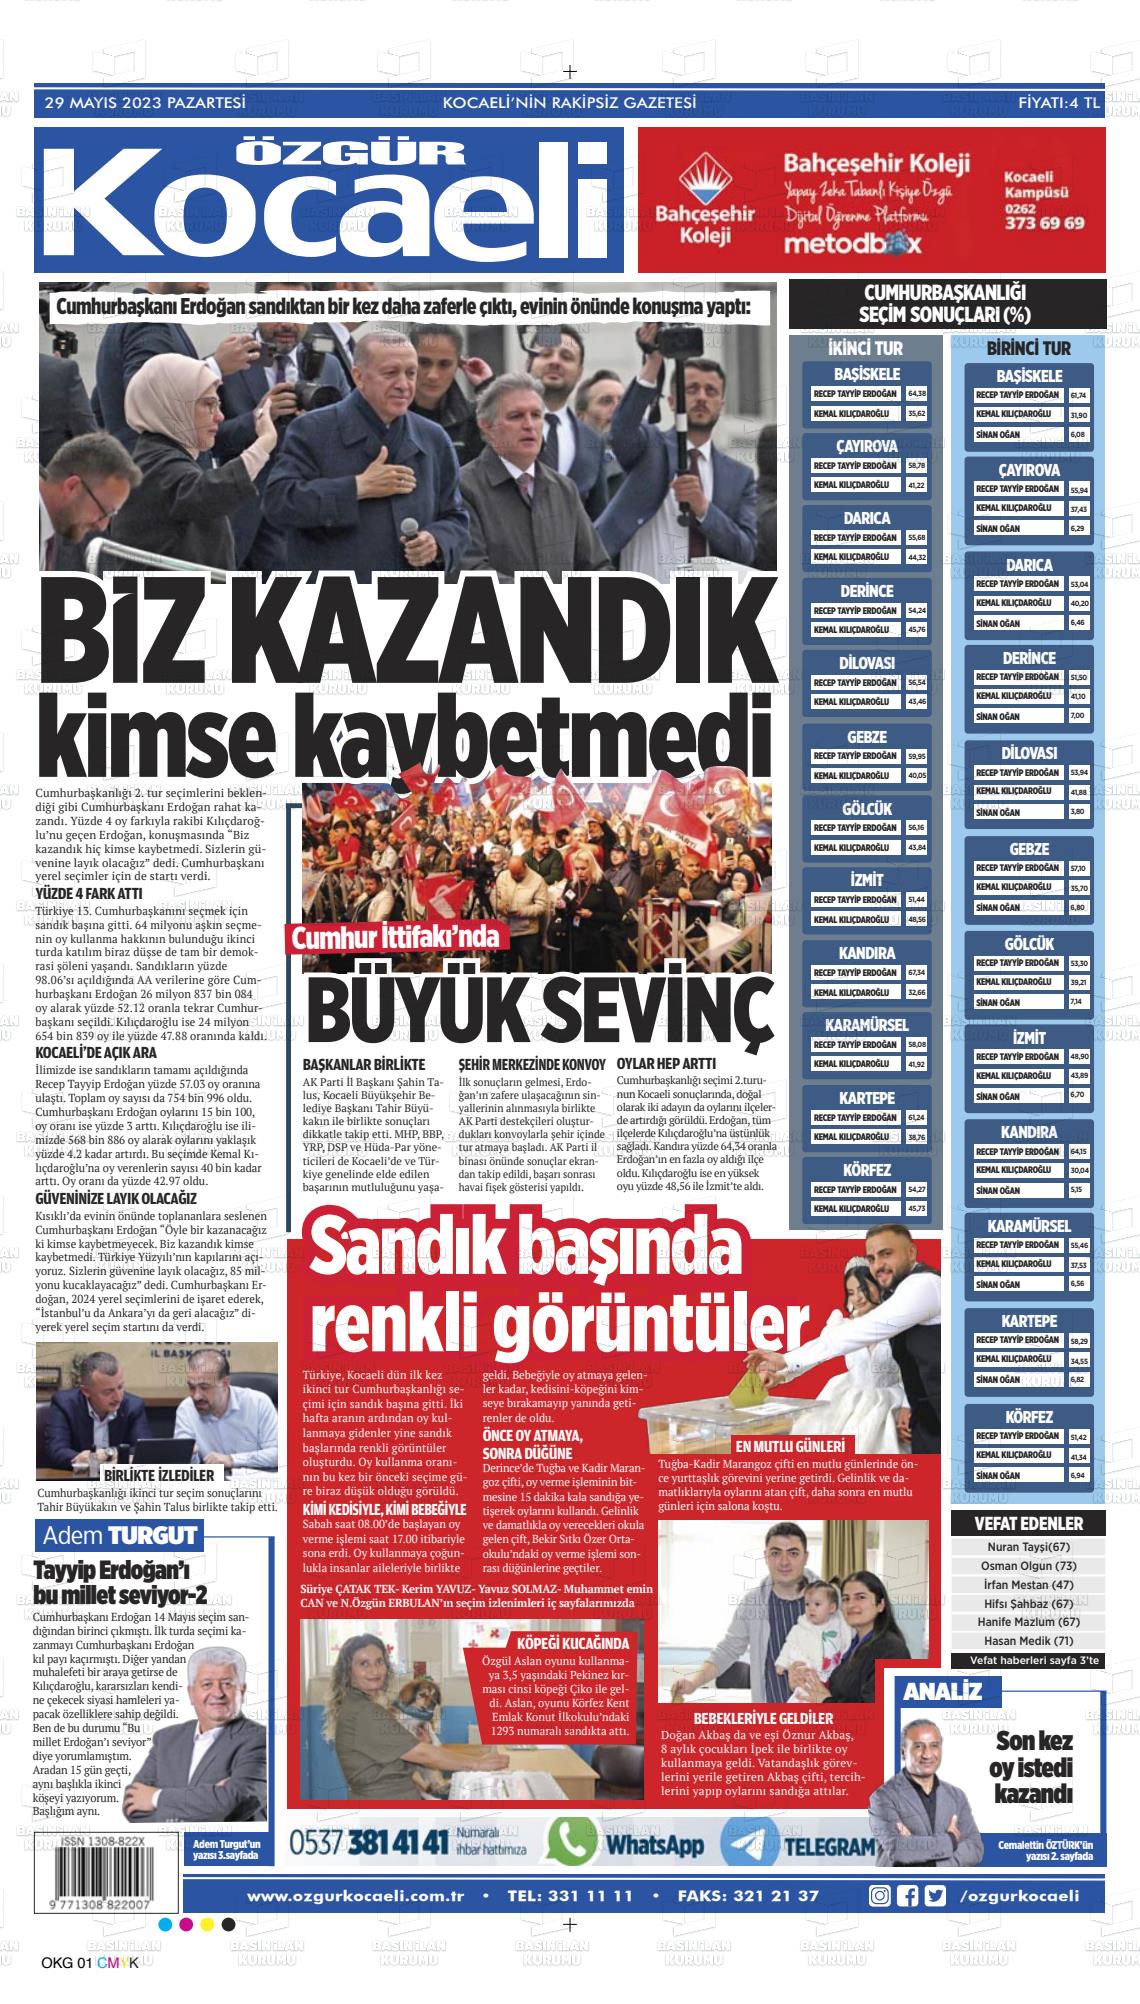 29 Mayıs 2023 Özgür Kocaeli Gazete Manşeti